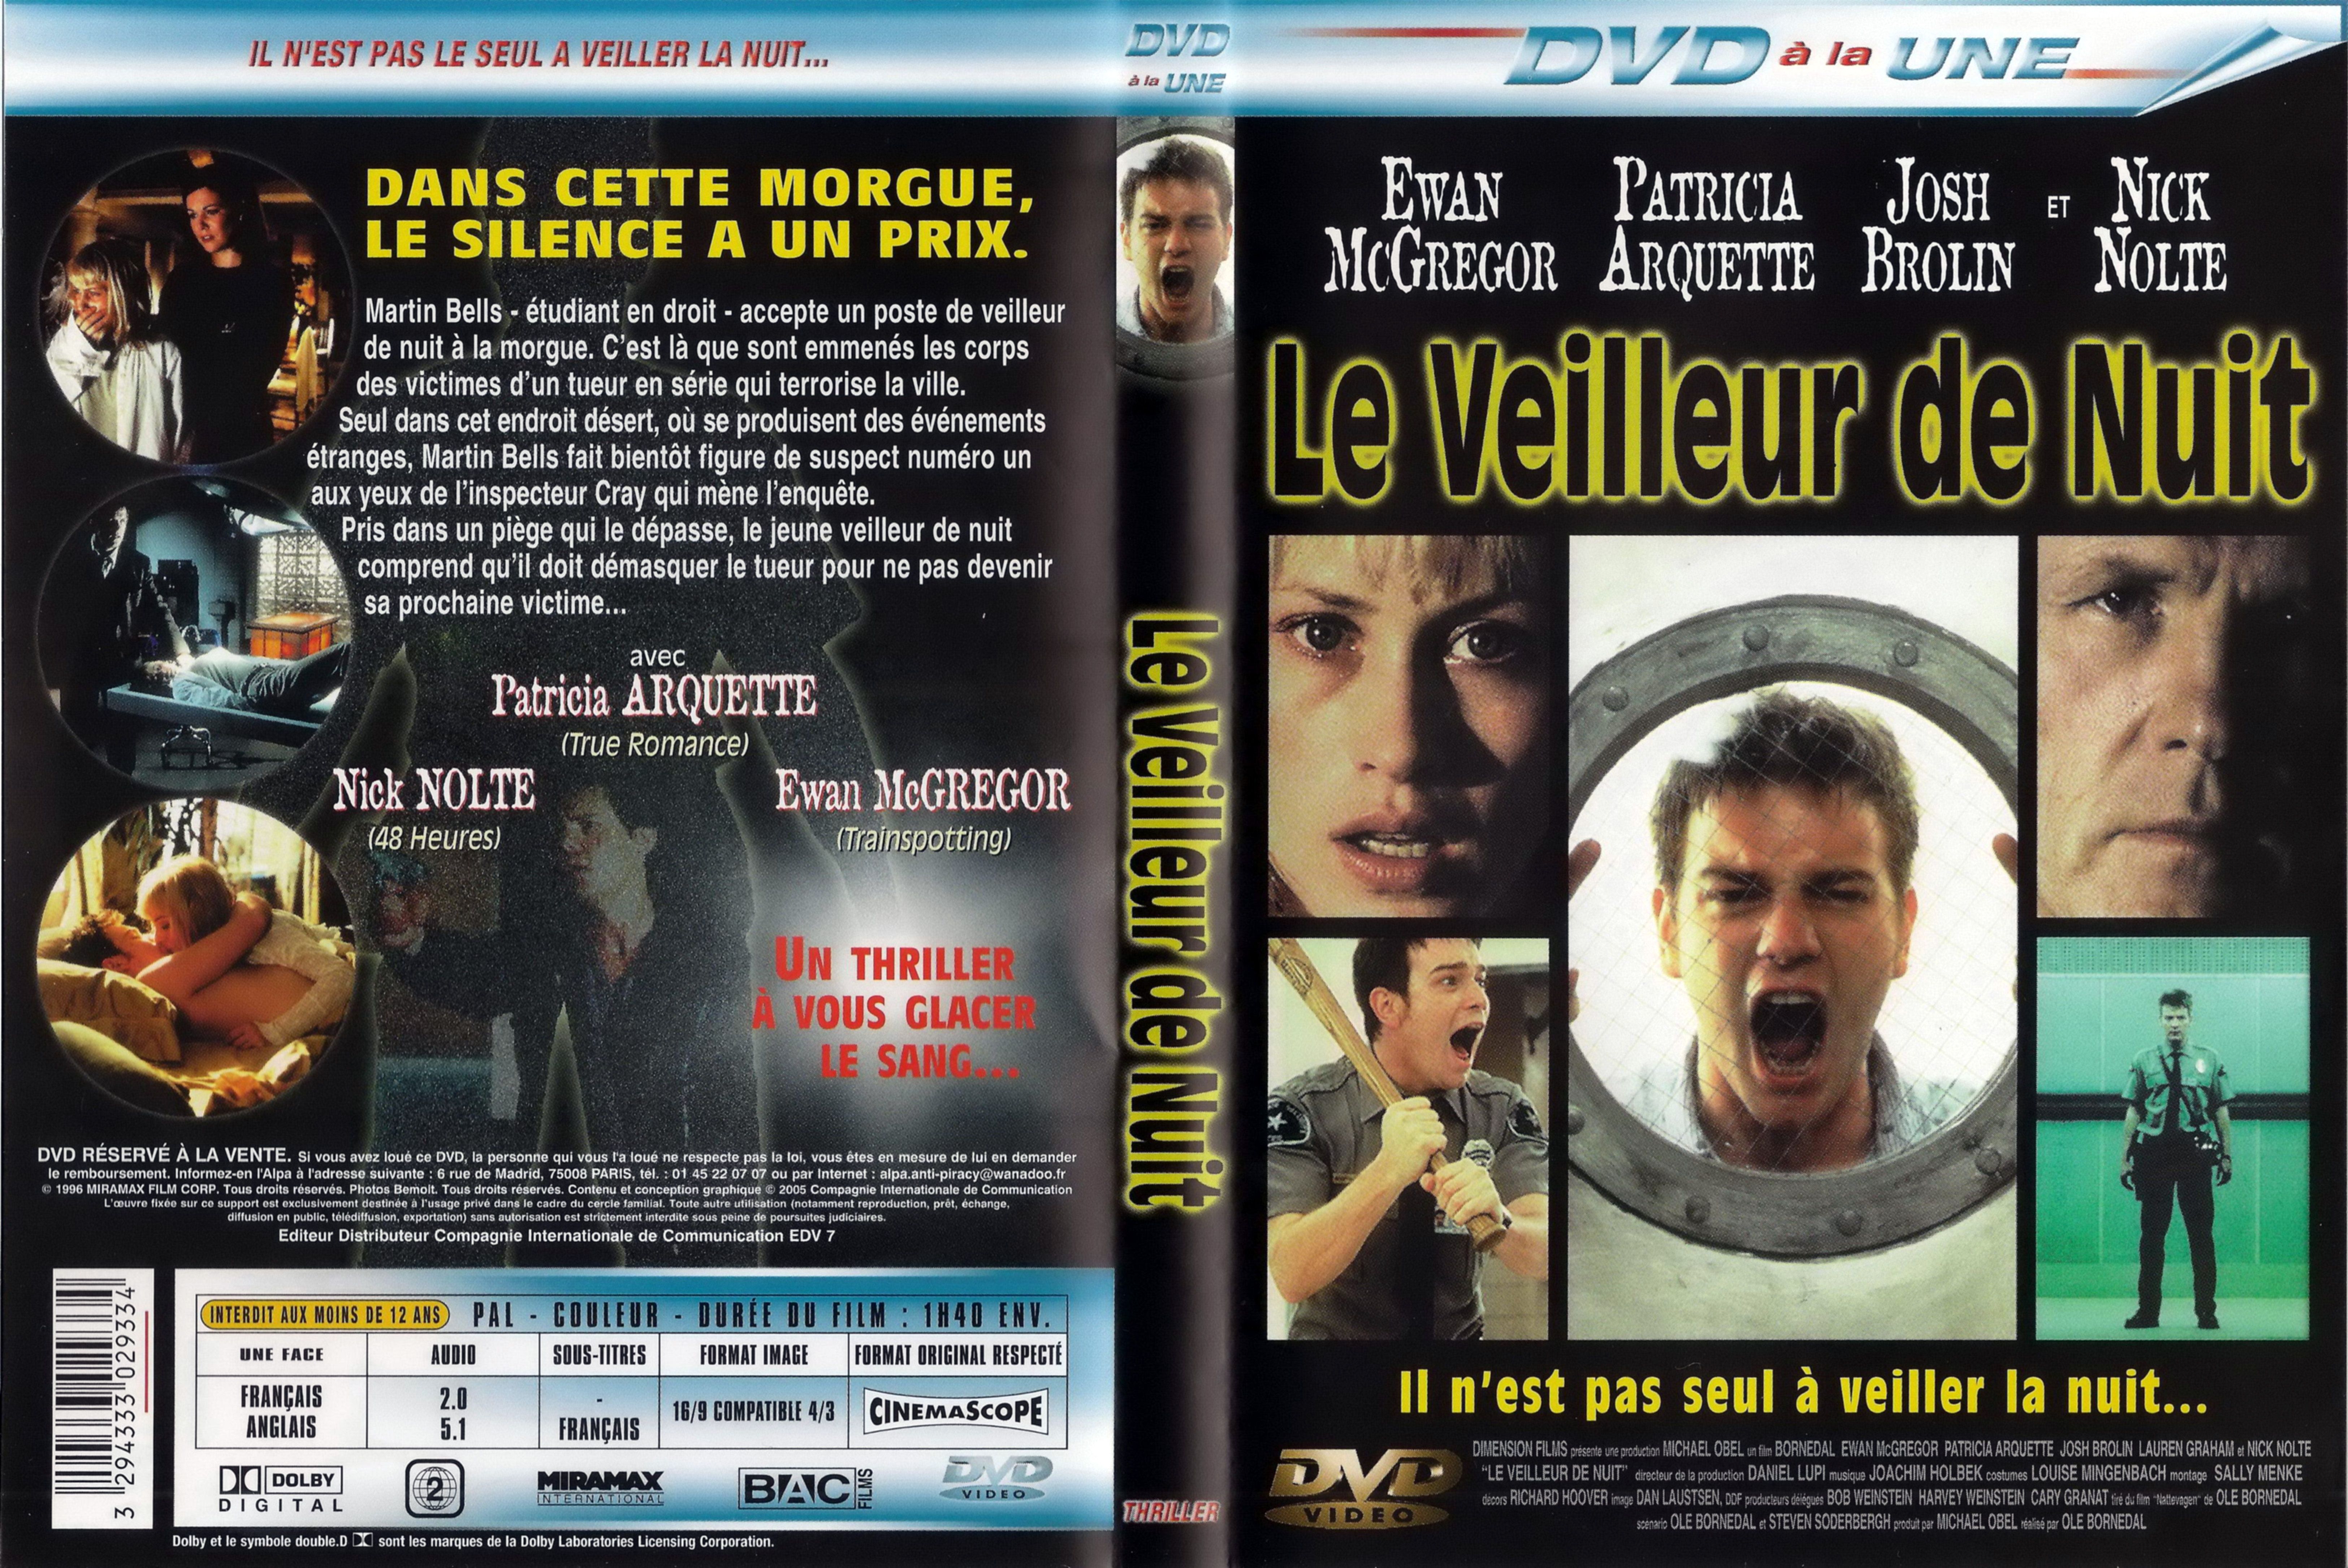 Jaquette DVD Le veilleur de nuit v3